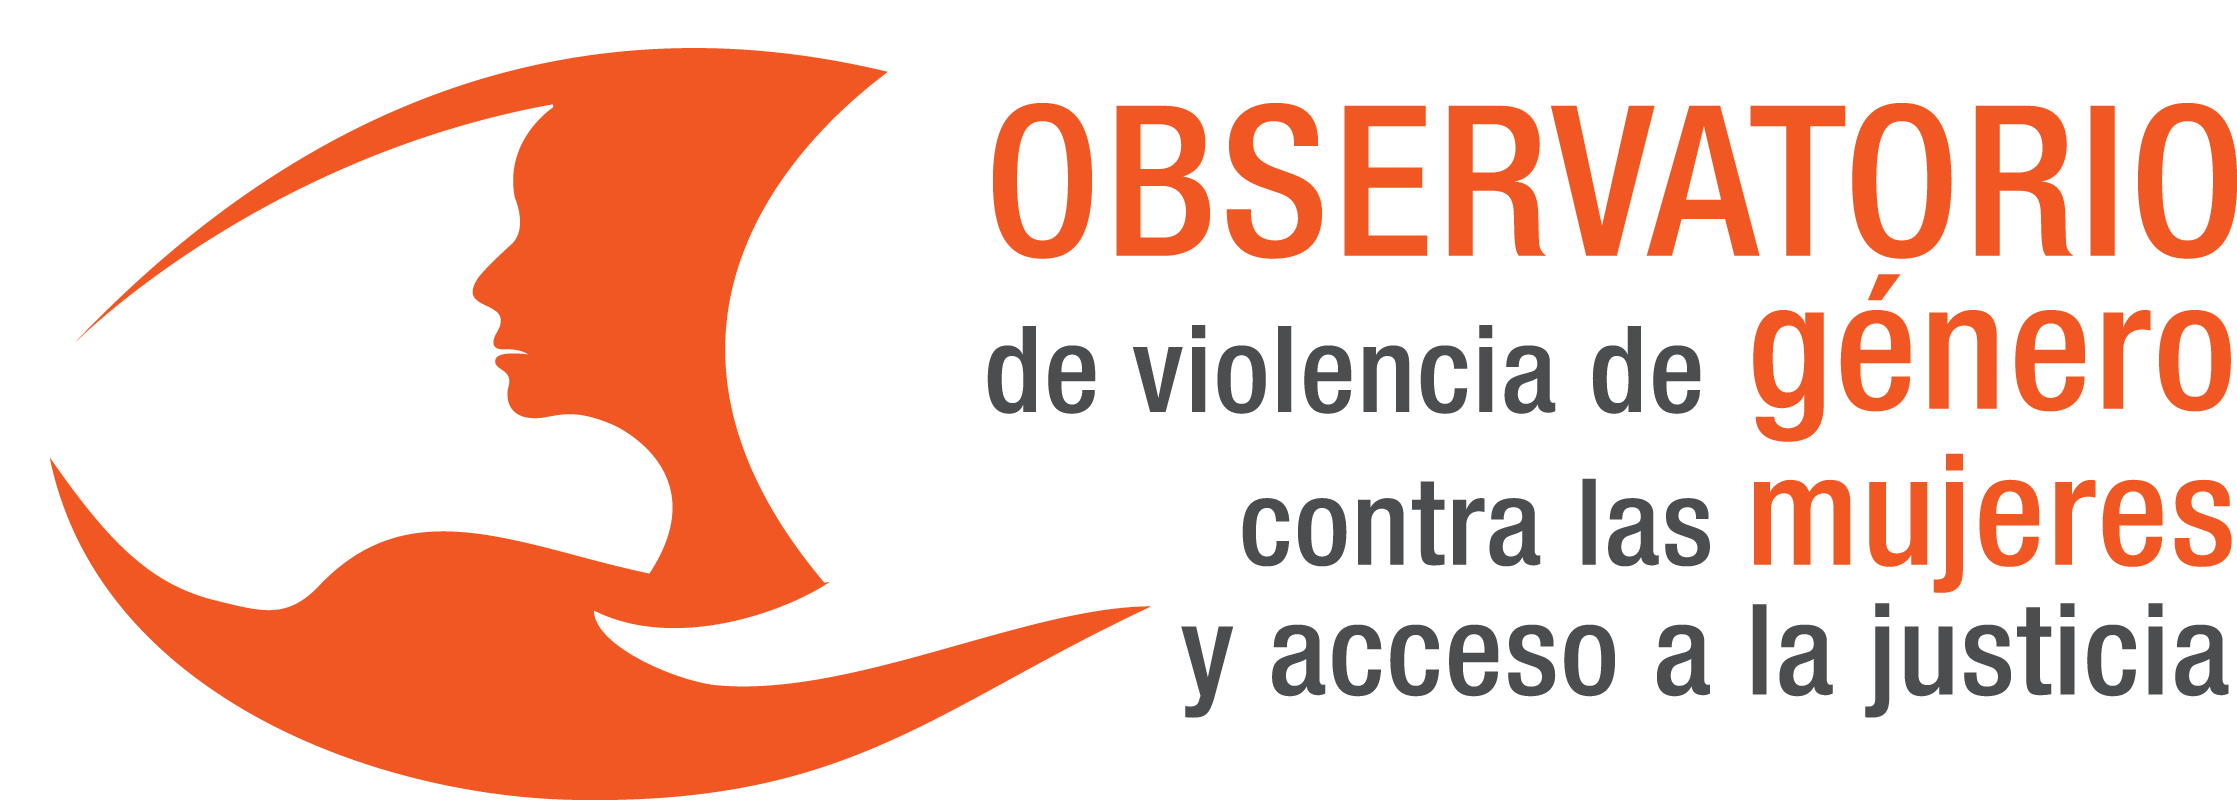 Logo Observatorio de violencia de género contra las mujeres y acceso a la justicia